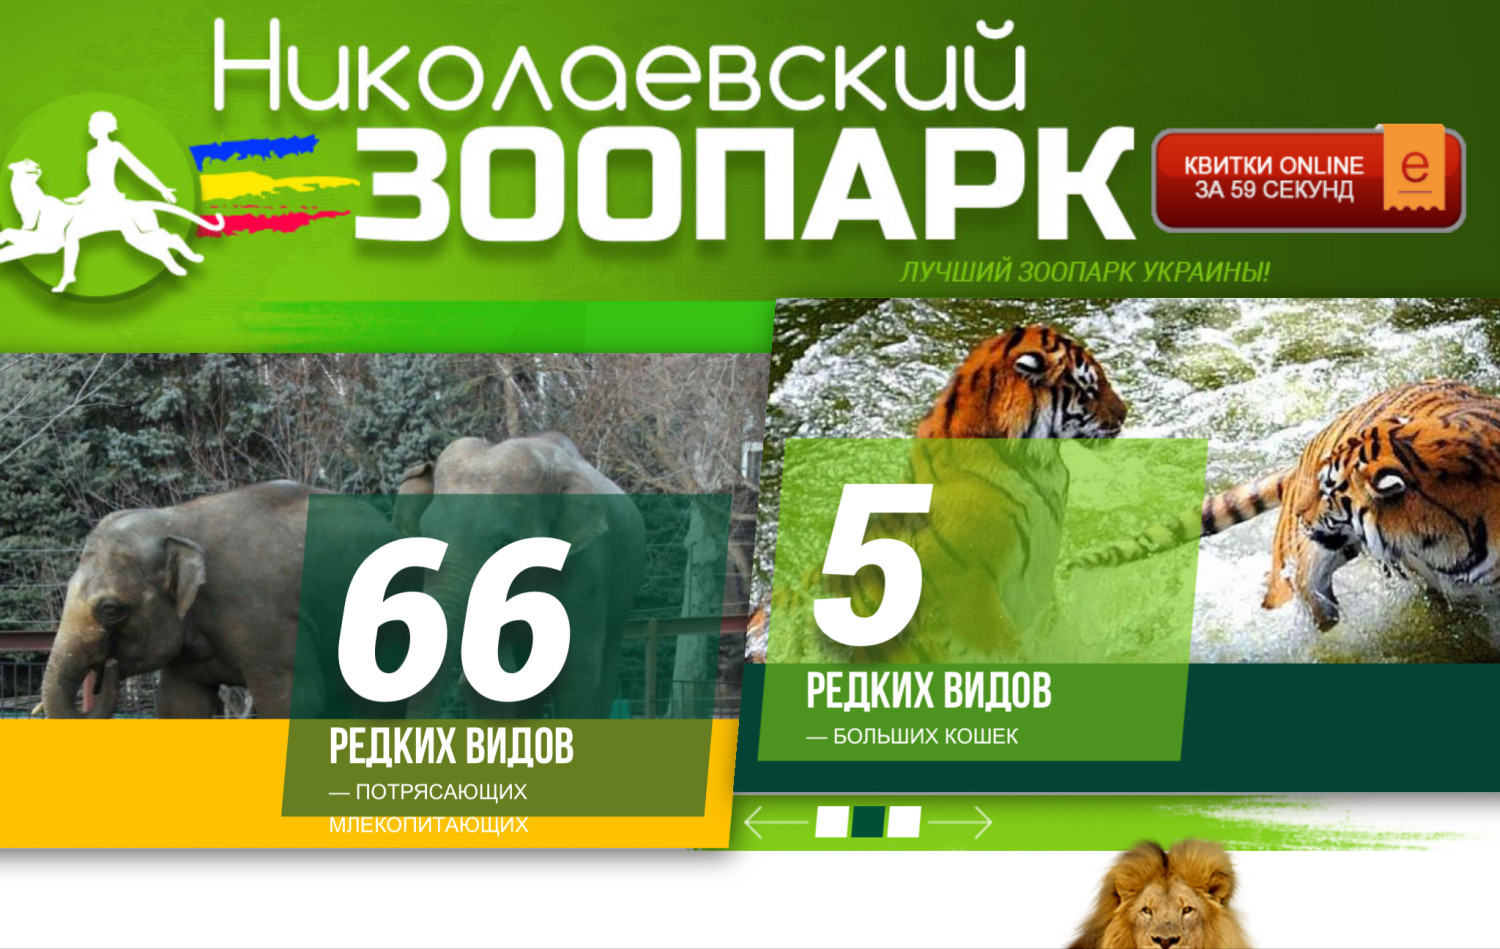 В Николаевском зоопарке до апреля раскупили все электронные билеты